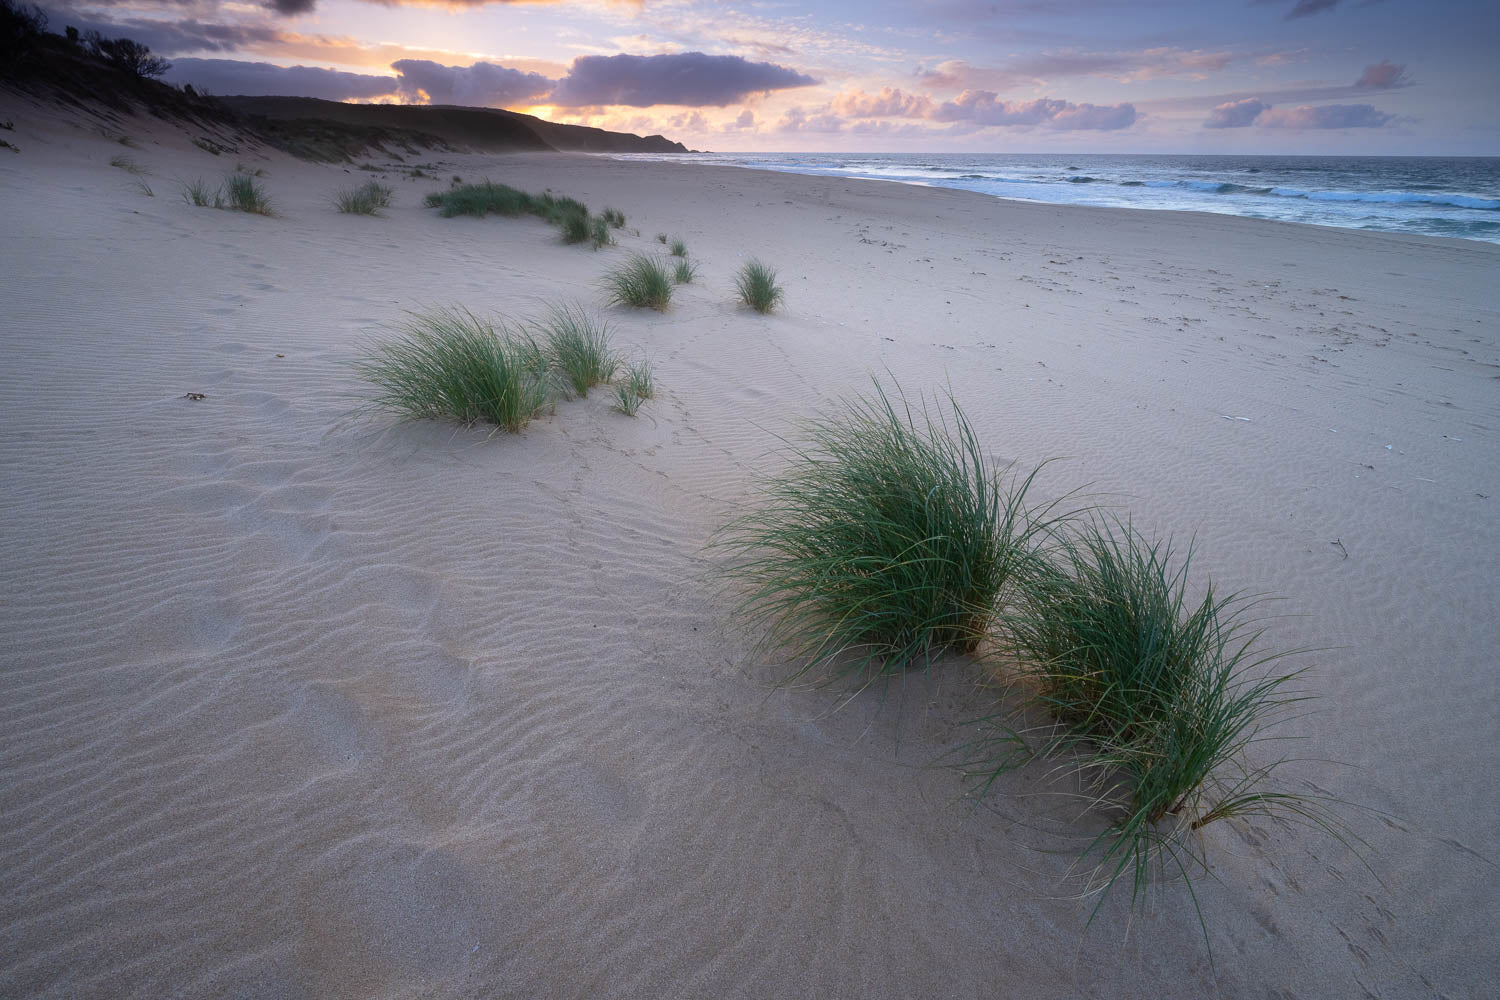 Joanne Beach dunes, Great Ocean Road